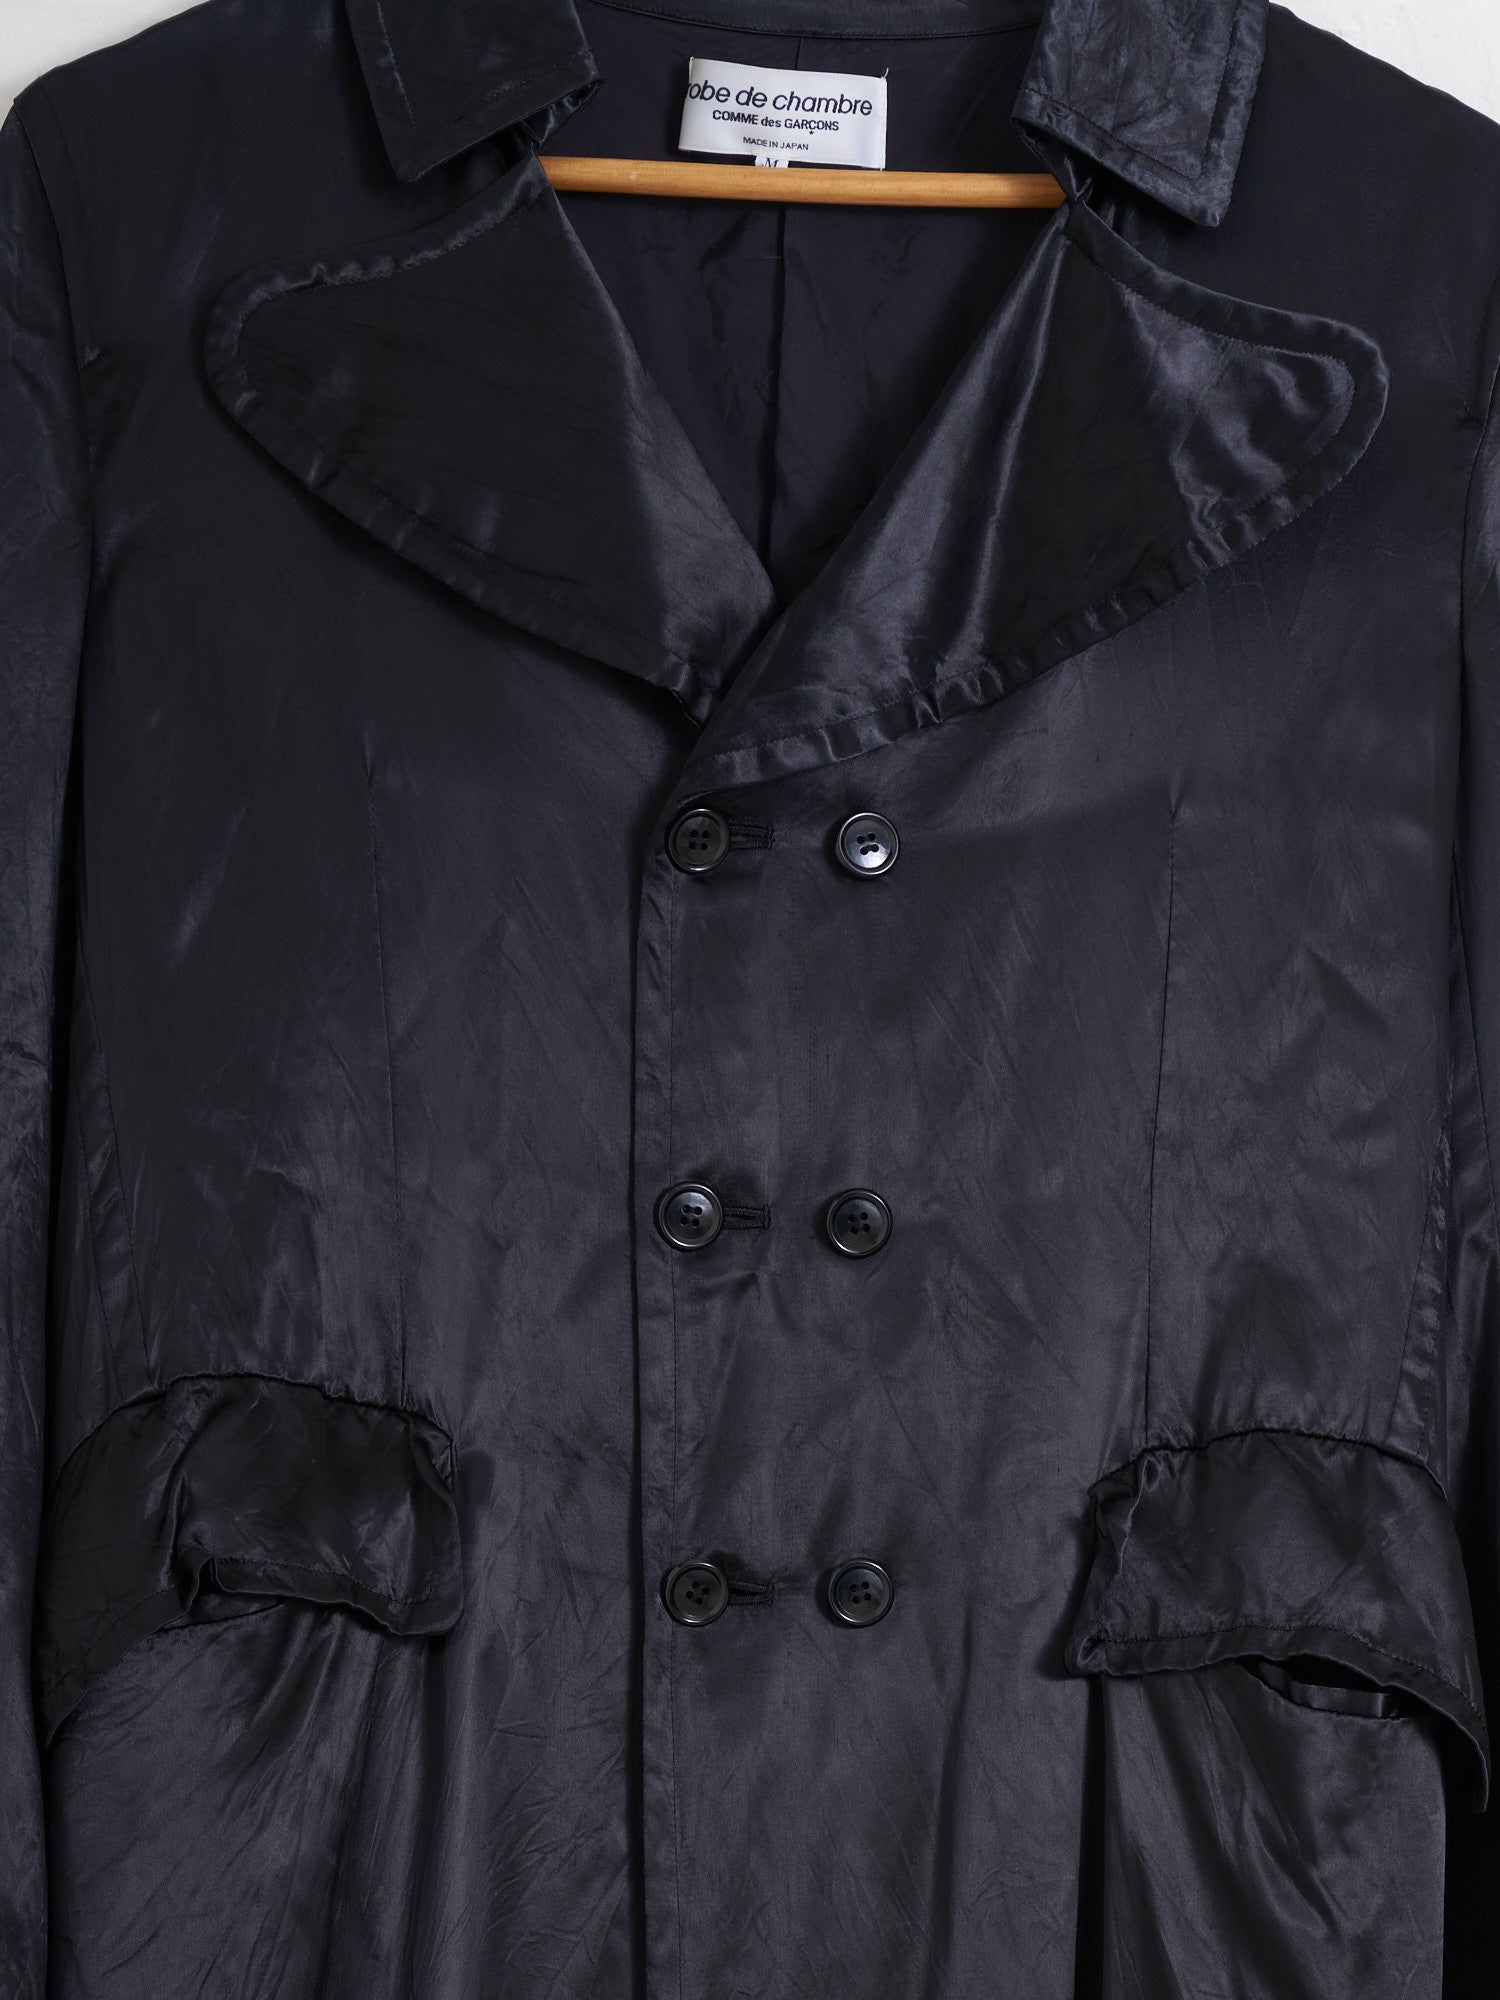 Robe de Chambre Comme des Garcons 2001 black satin double breasted coat - size M